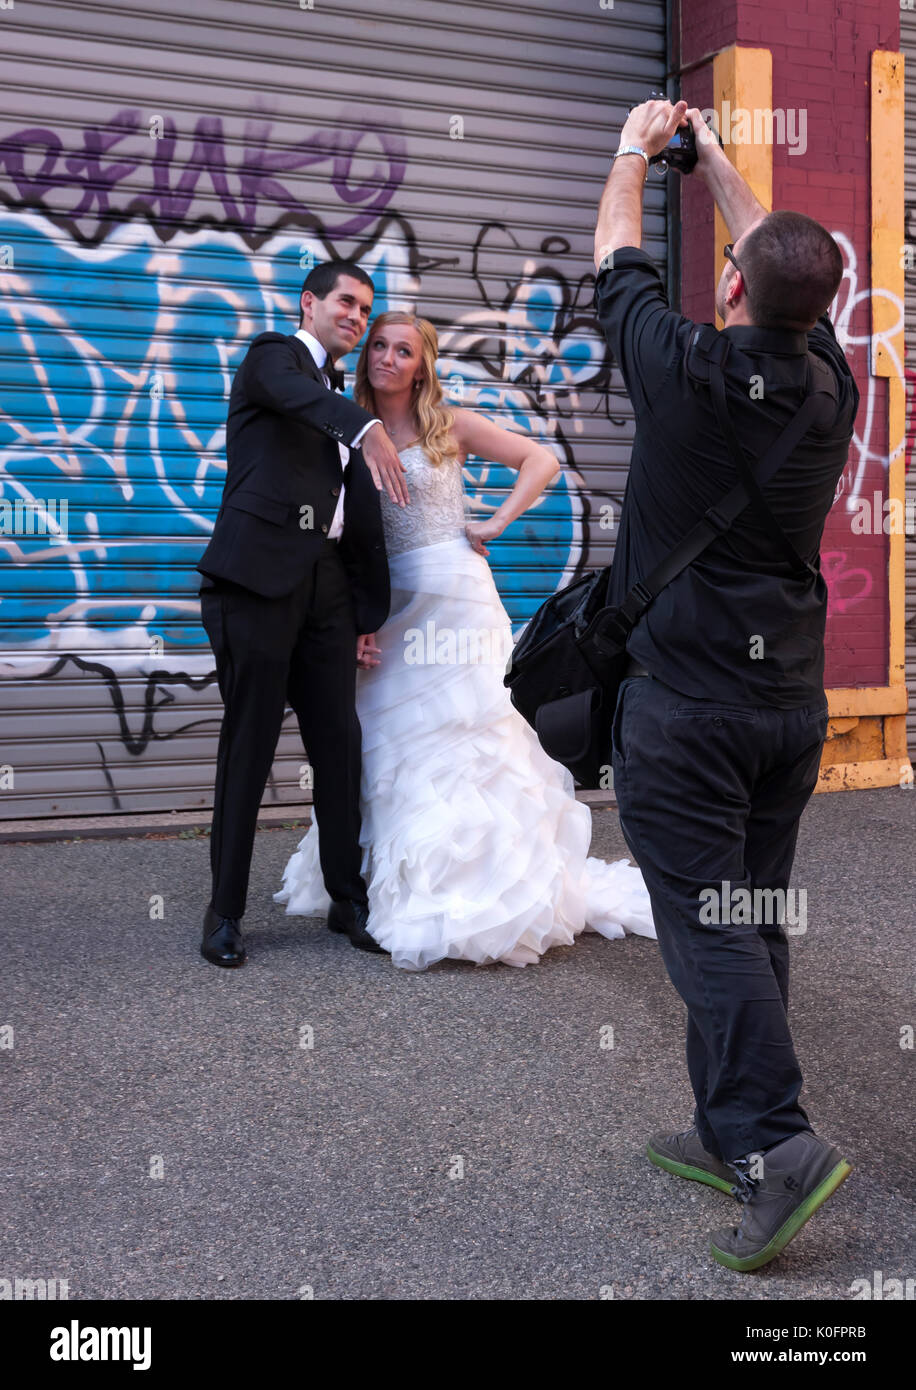 Un fotógrafo de bodas capta la novia & posando y actuando cool contra un graffiti de fondo. Foto de stock